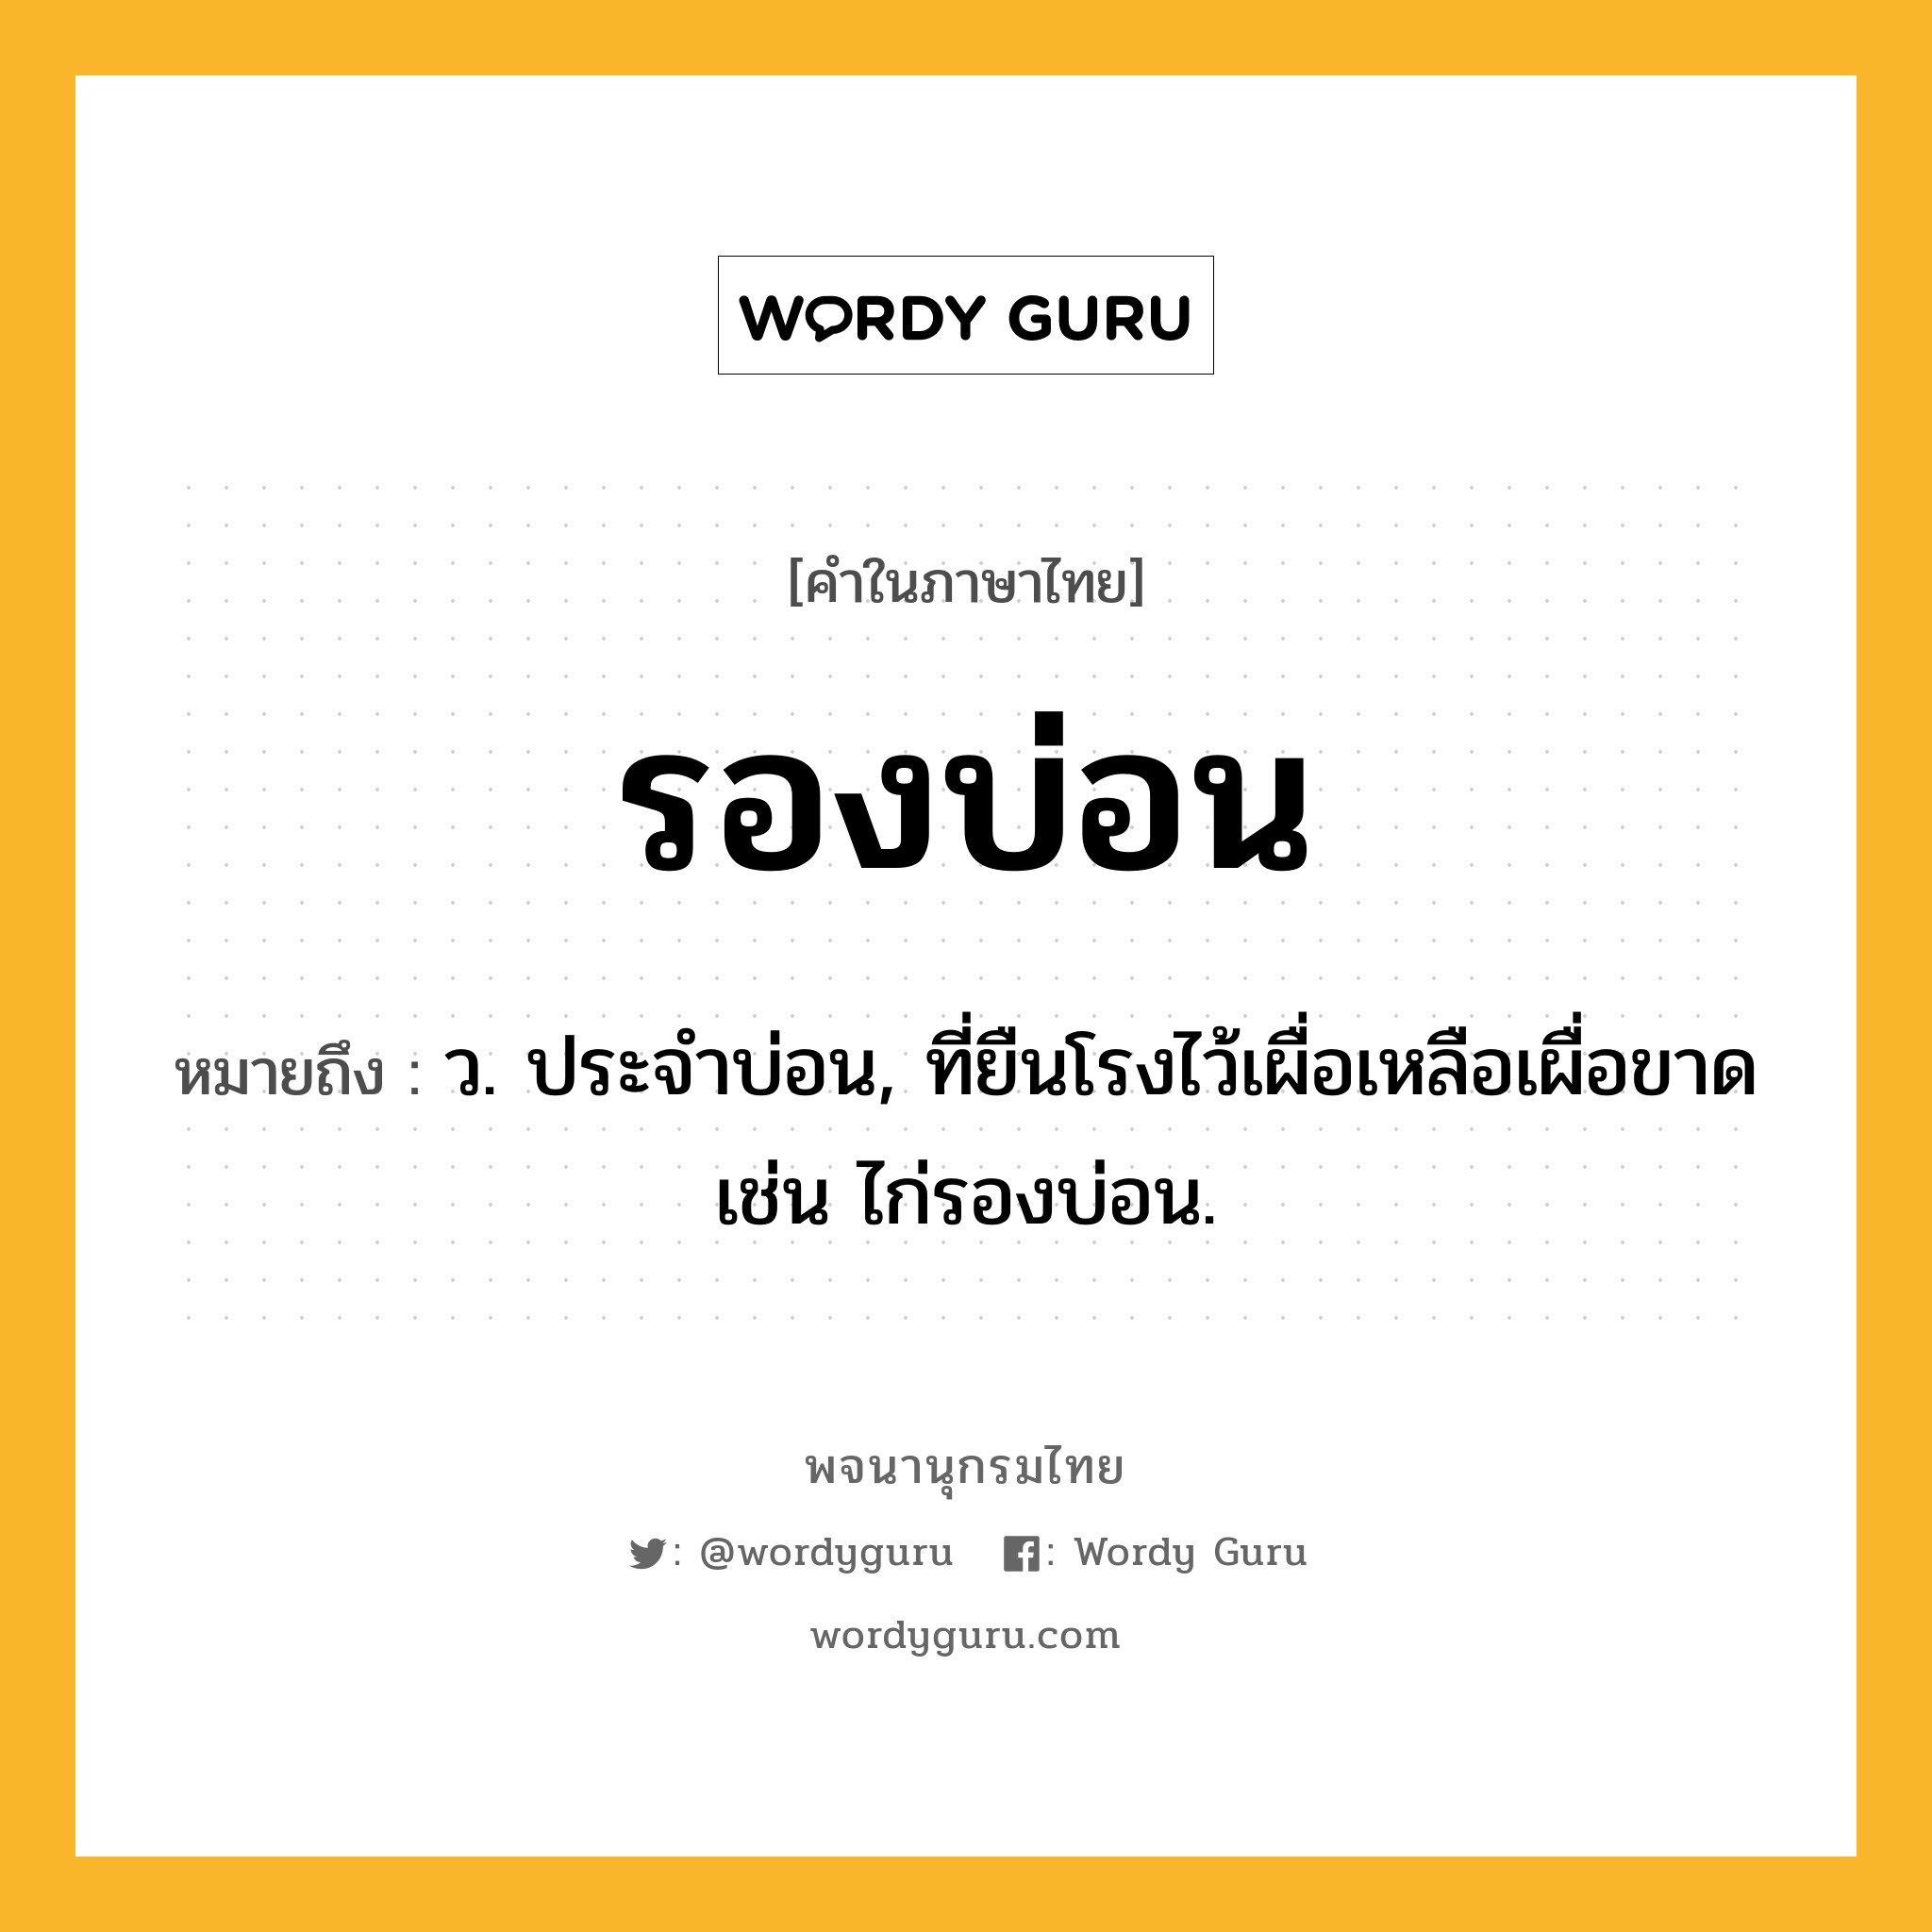 รองบ่อน ความหมาย หมายถึงอะไร?, คำในภาษาไทย รองบ่อน หมายถึง ว. ประจําบ่อน, ที่ยืนโรงไว้เผื่อเหลือเผื่อขาด เช่น ไก่รองบ่อน.